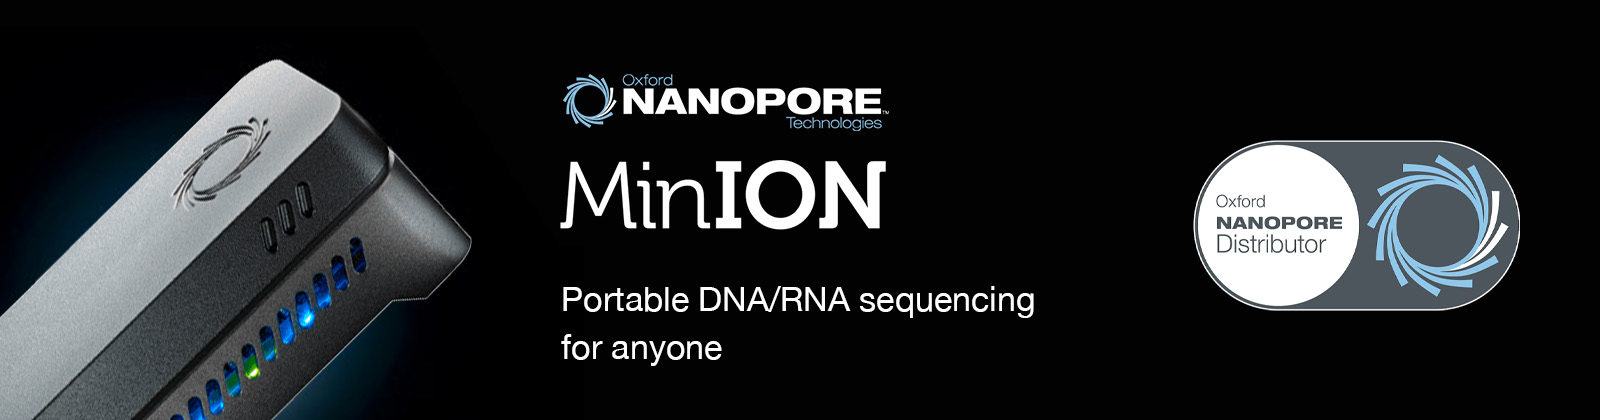 Nanopore minion India